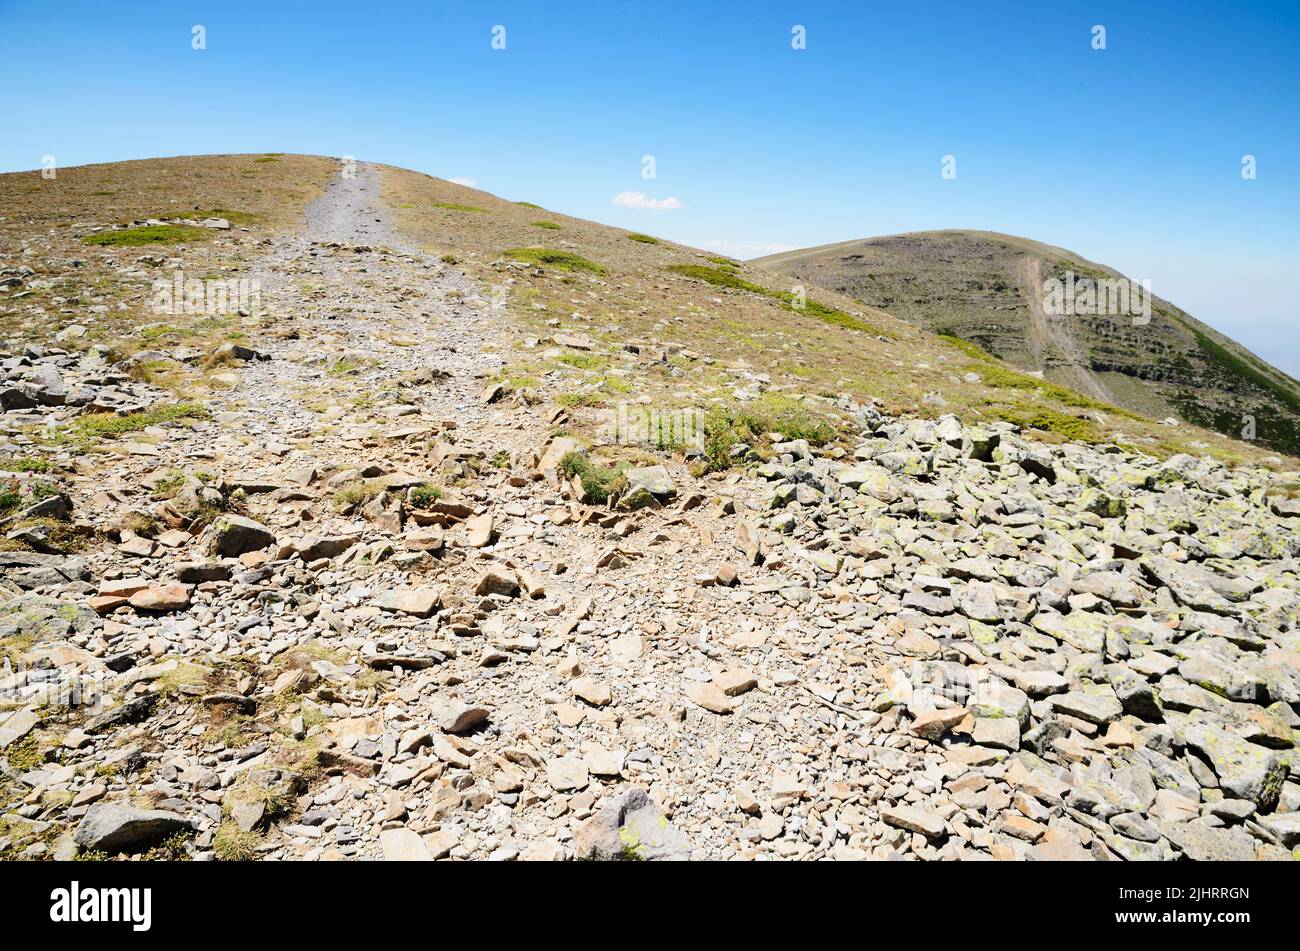 Gelände, das auf dem Weg von Wanderern auf den Spuren getragen wird. El Moncayo oder San Miguel ist ein Berg im iberischen System zwischen den Provinzen von Zaragoza Stockfoto